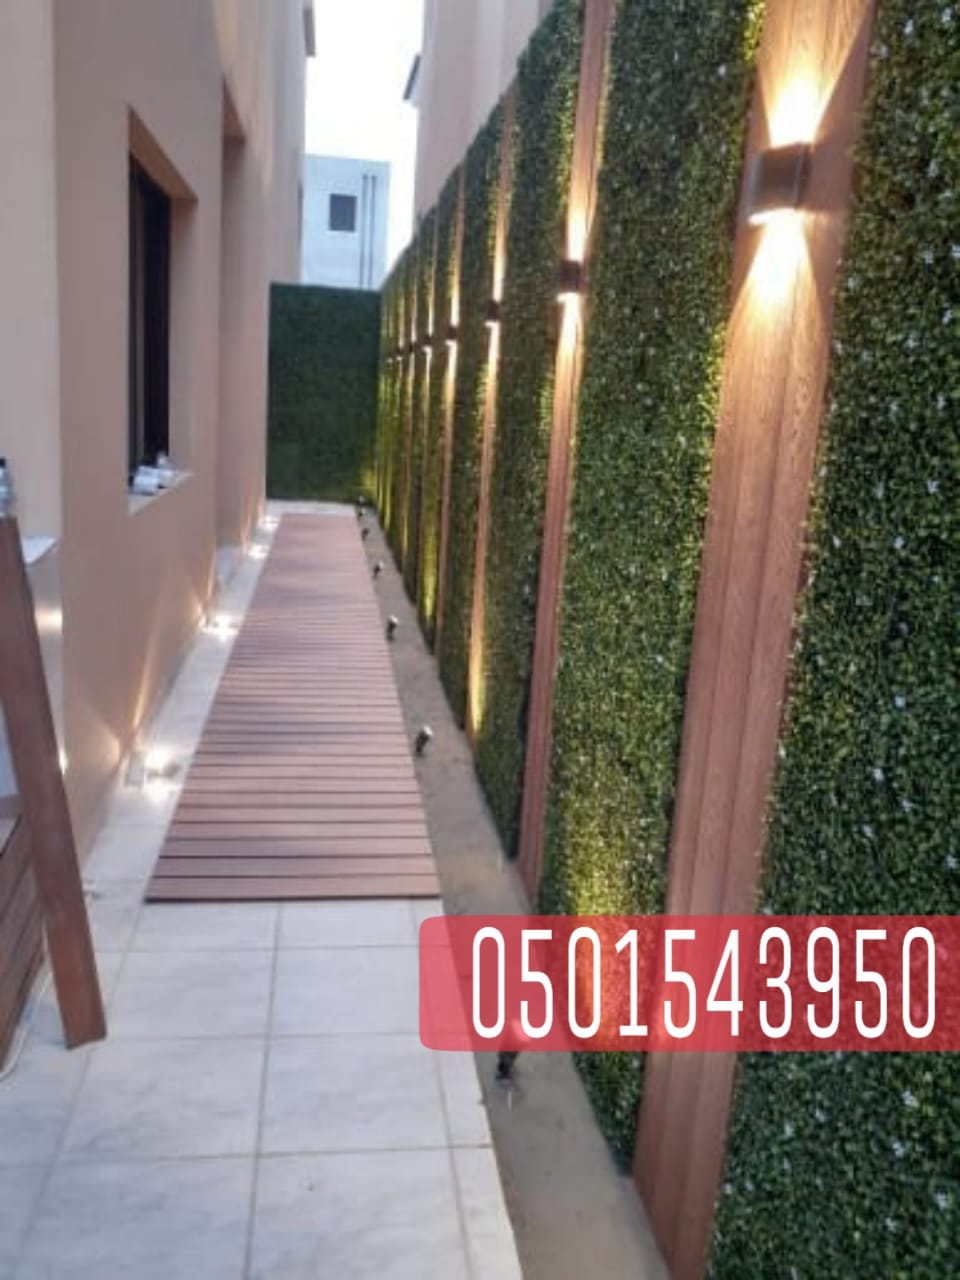 تنسيق حدائق في جدة , برجولات خشب , جلسات حدائق منزلية , 0501543950 P_2078ieq8y8